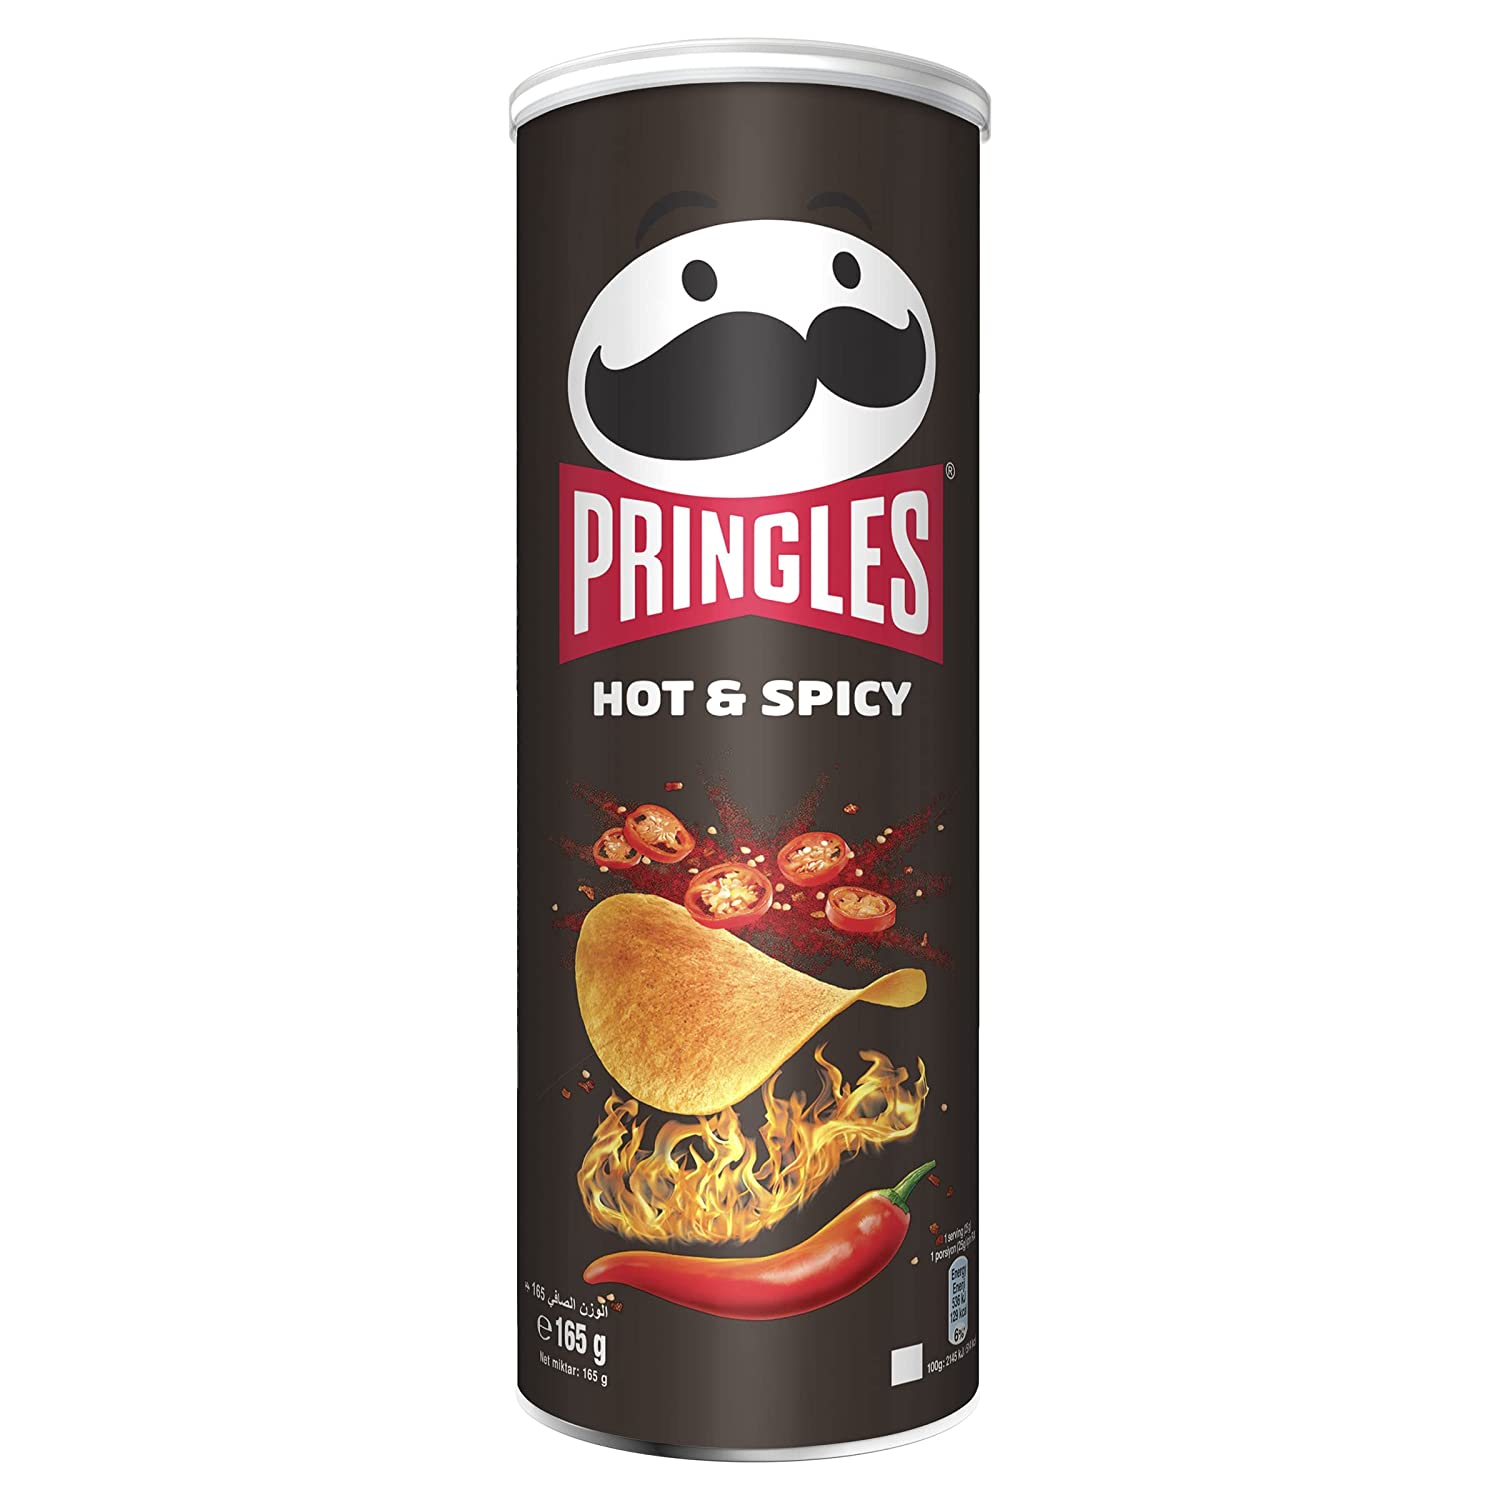 چیپس فلفلی تند پرینگلز Pringles  اورجینال